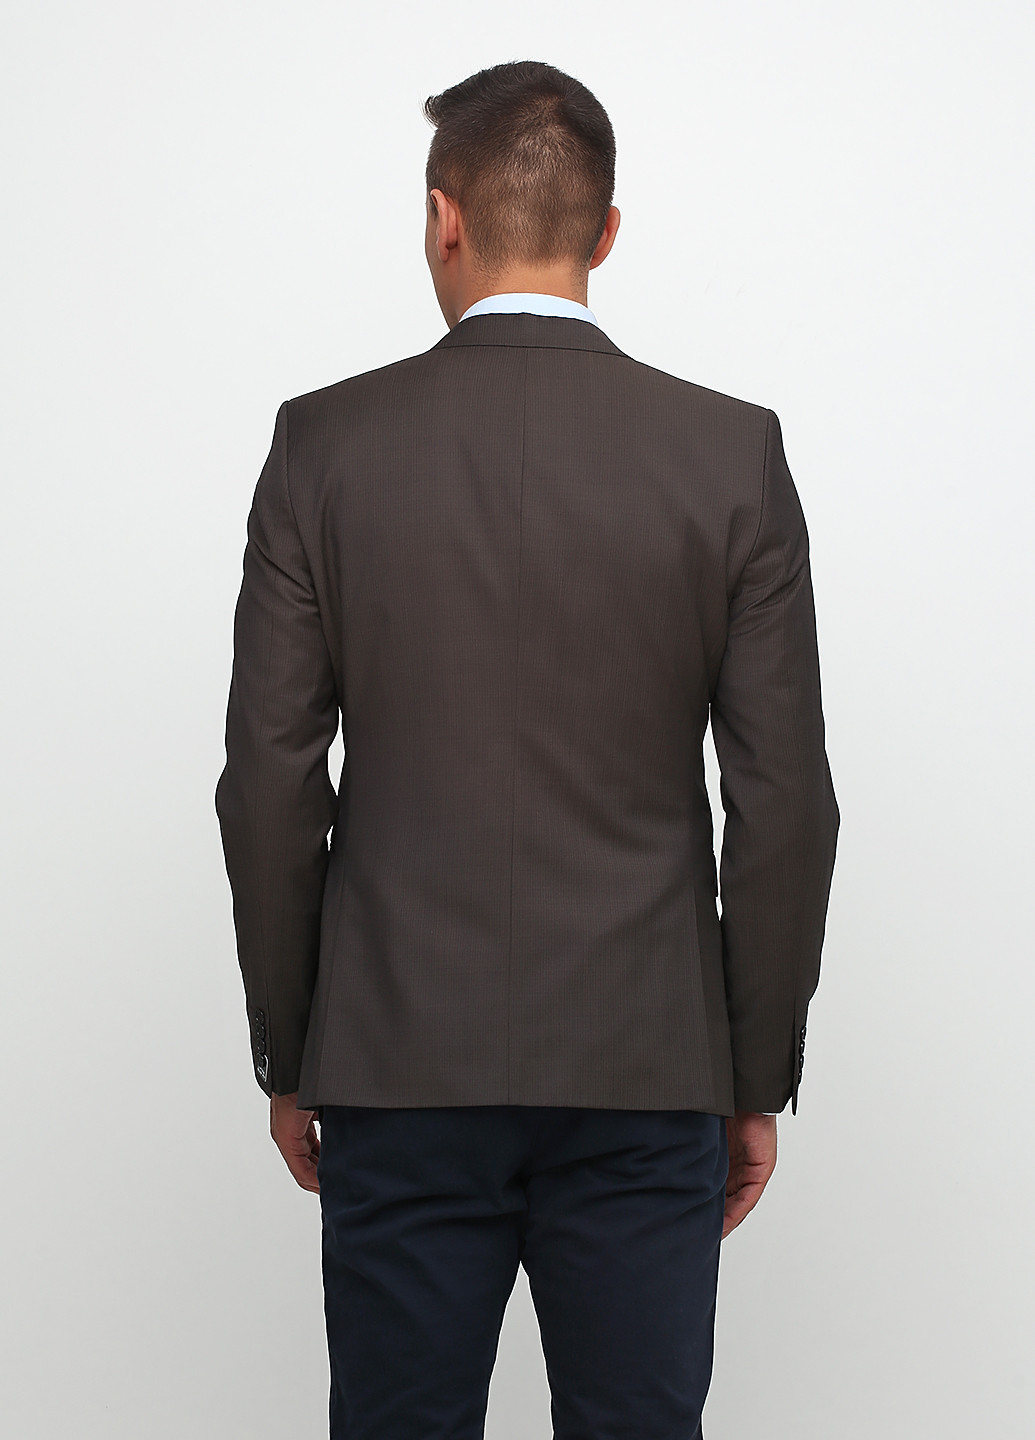 Пиджак S.Oliver с длинным рукавом полоска коричневый деловой